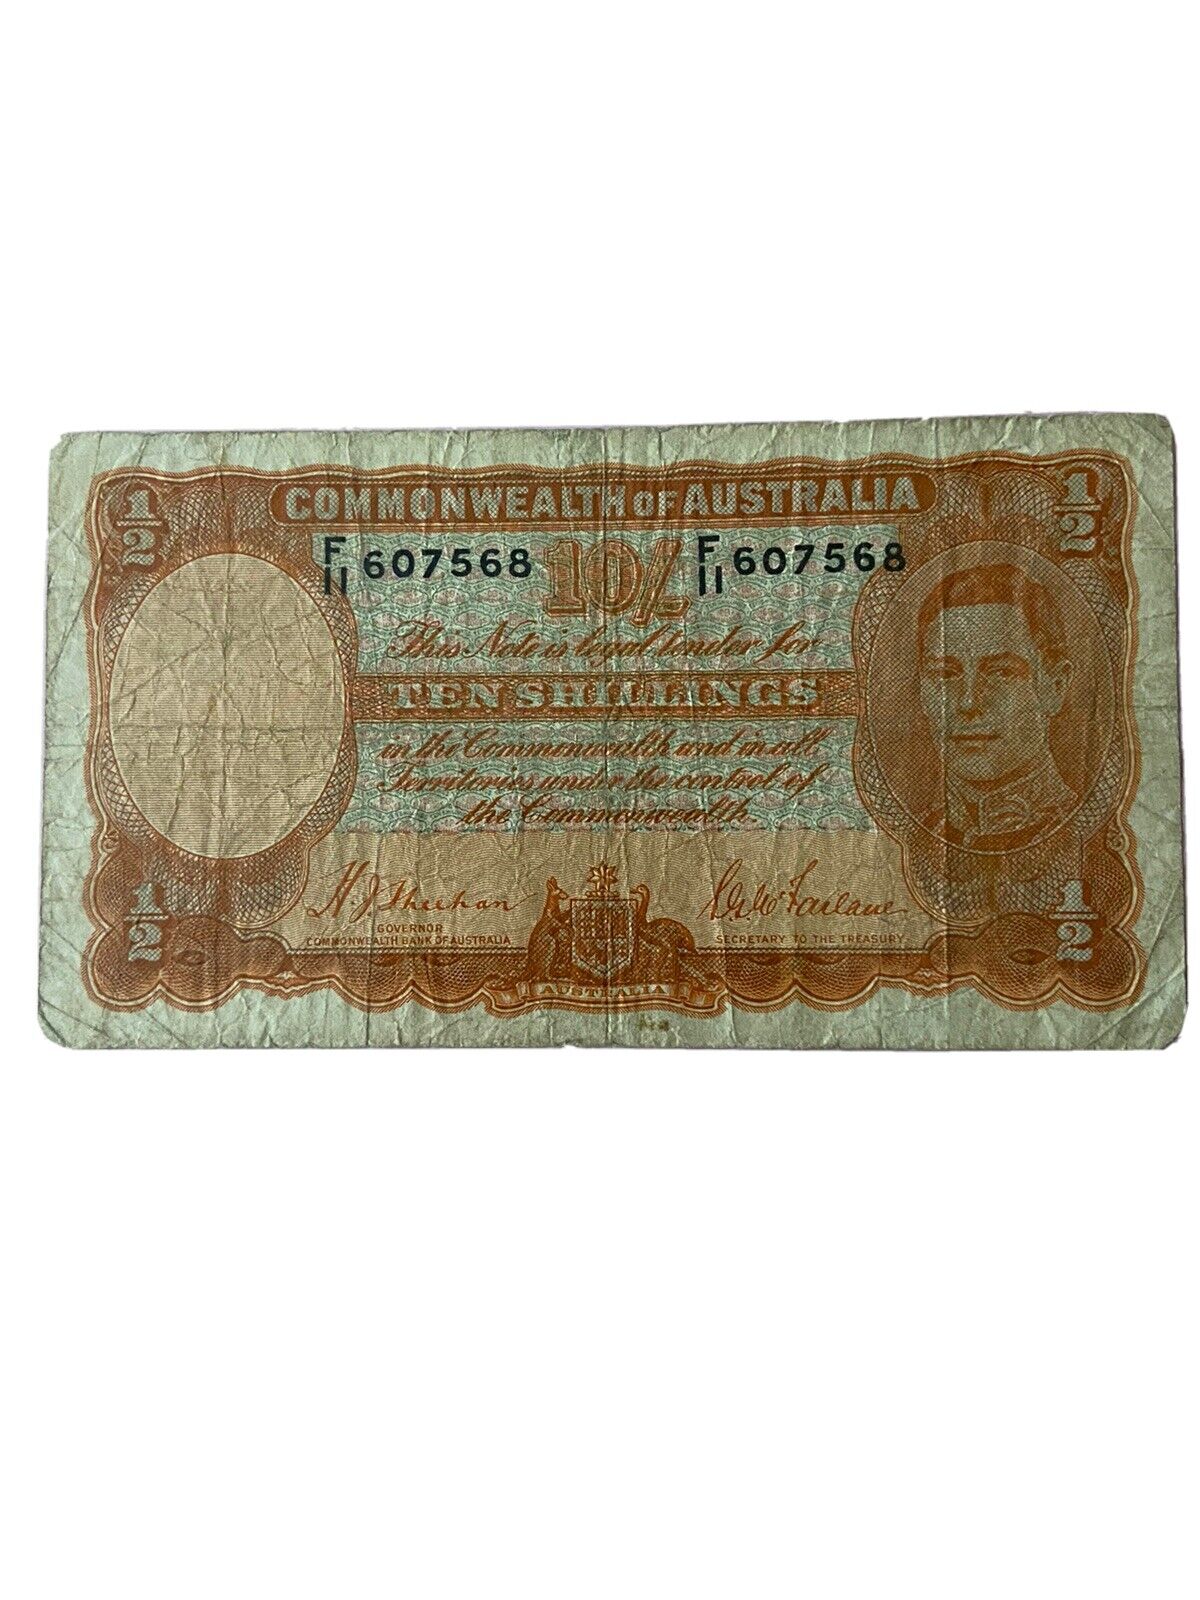 Australia Ten Shillings Ww2 Bank Note